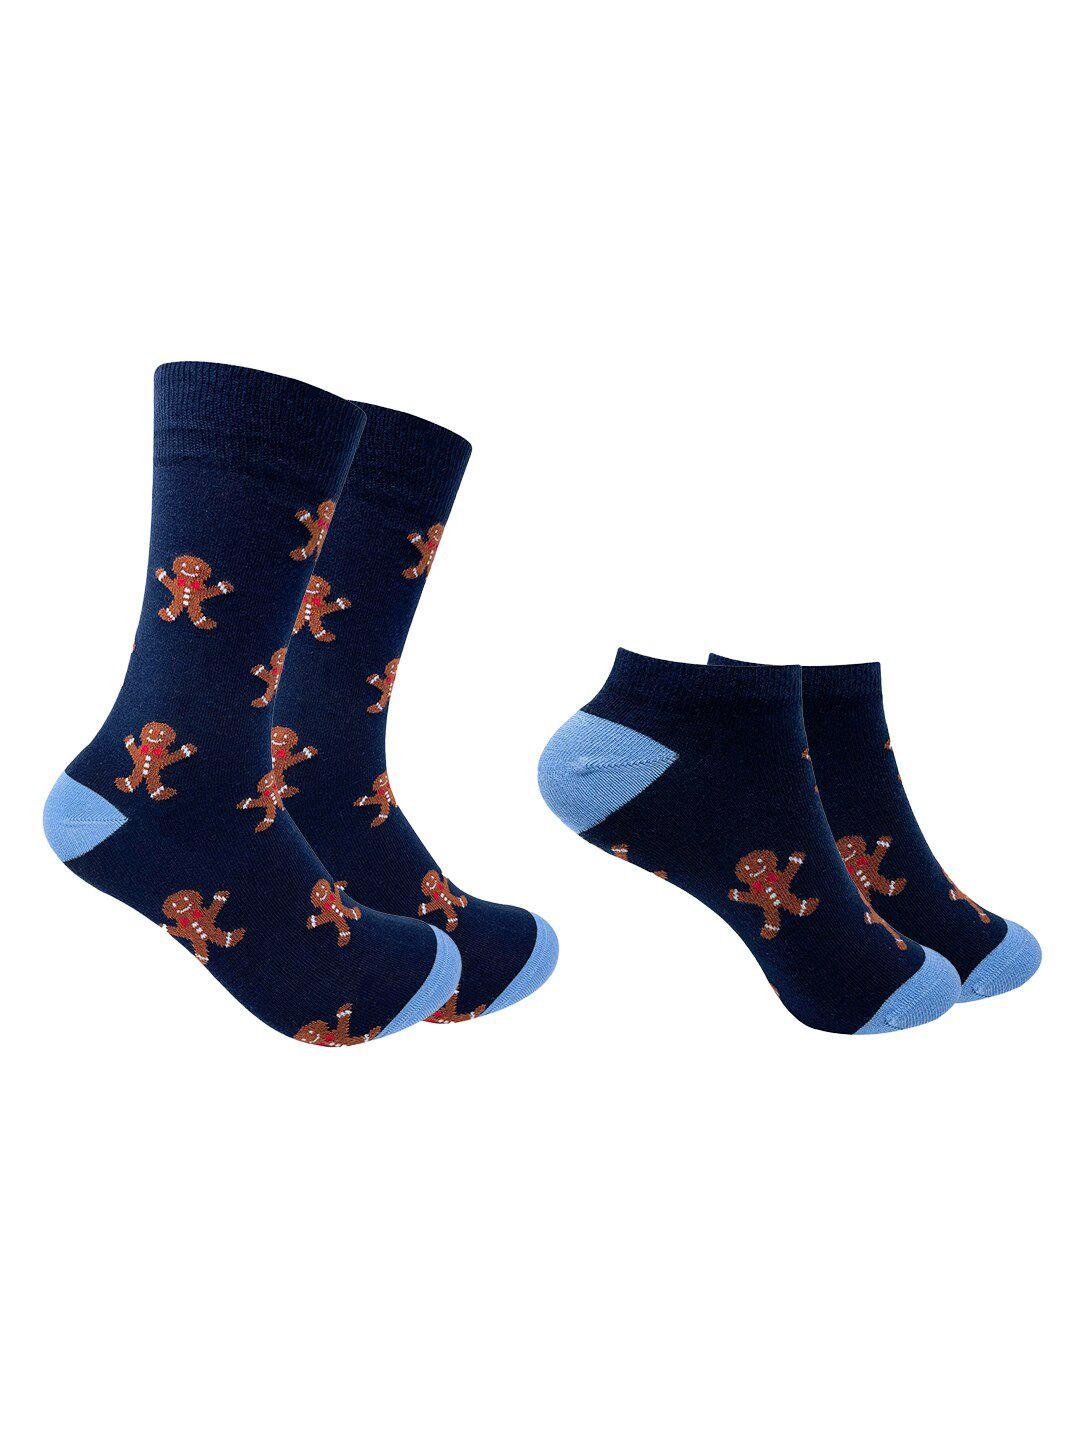 mint & oak pack of 2 navy blue patterned calf length & ankle length socks